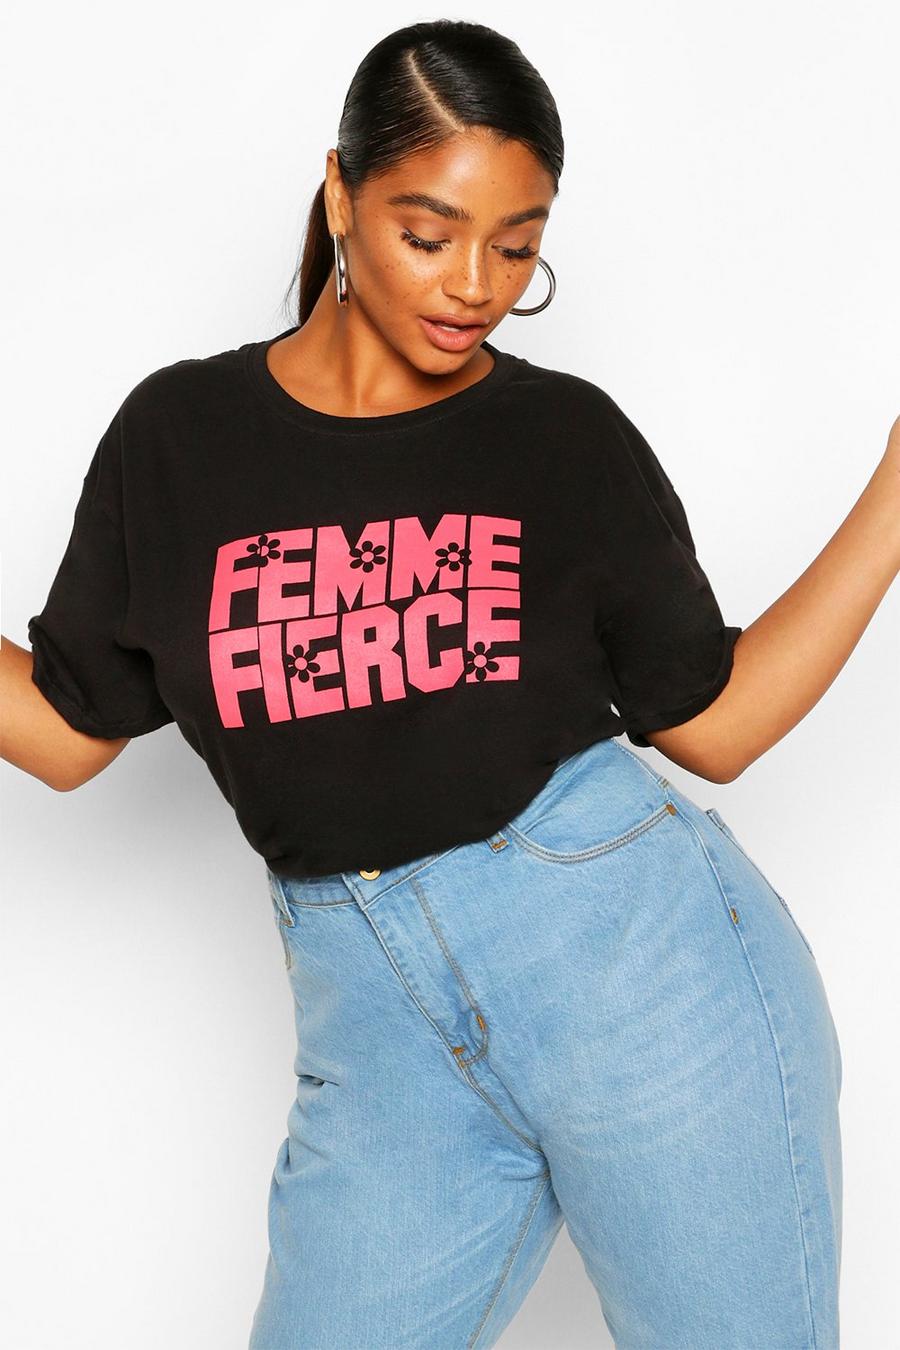 Camiseta con eslogan “Femme Fierce” Plus image number 1